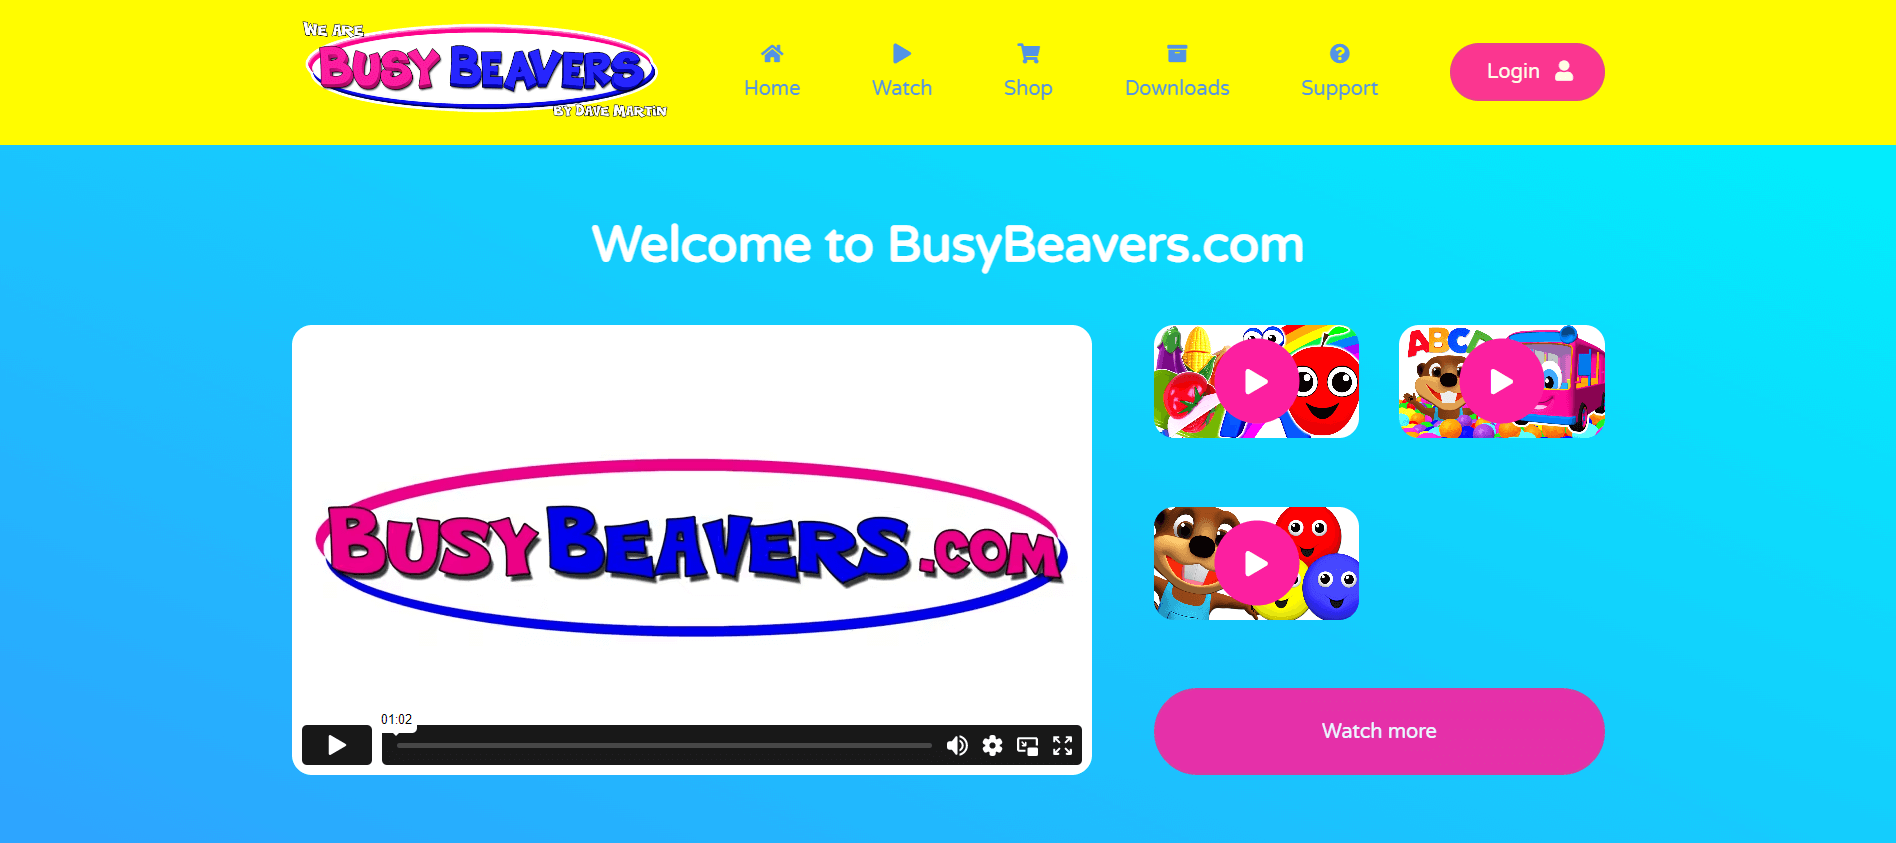 Busy Beavers - trang web học tiếng Anh cho trẻ em nổi tiếng nhất hiện tại